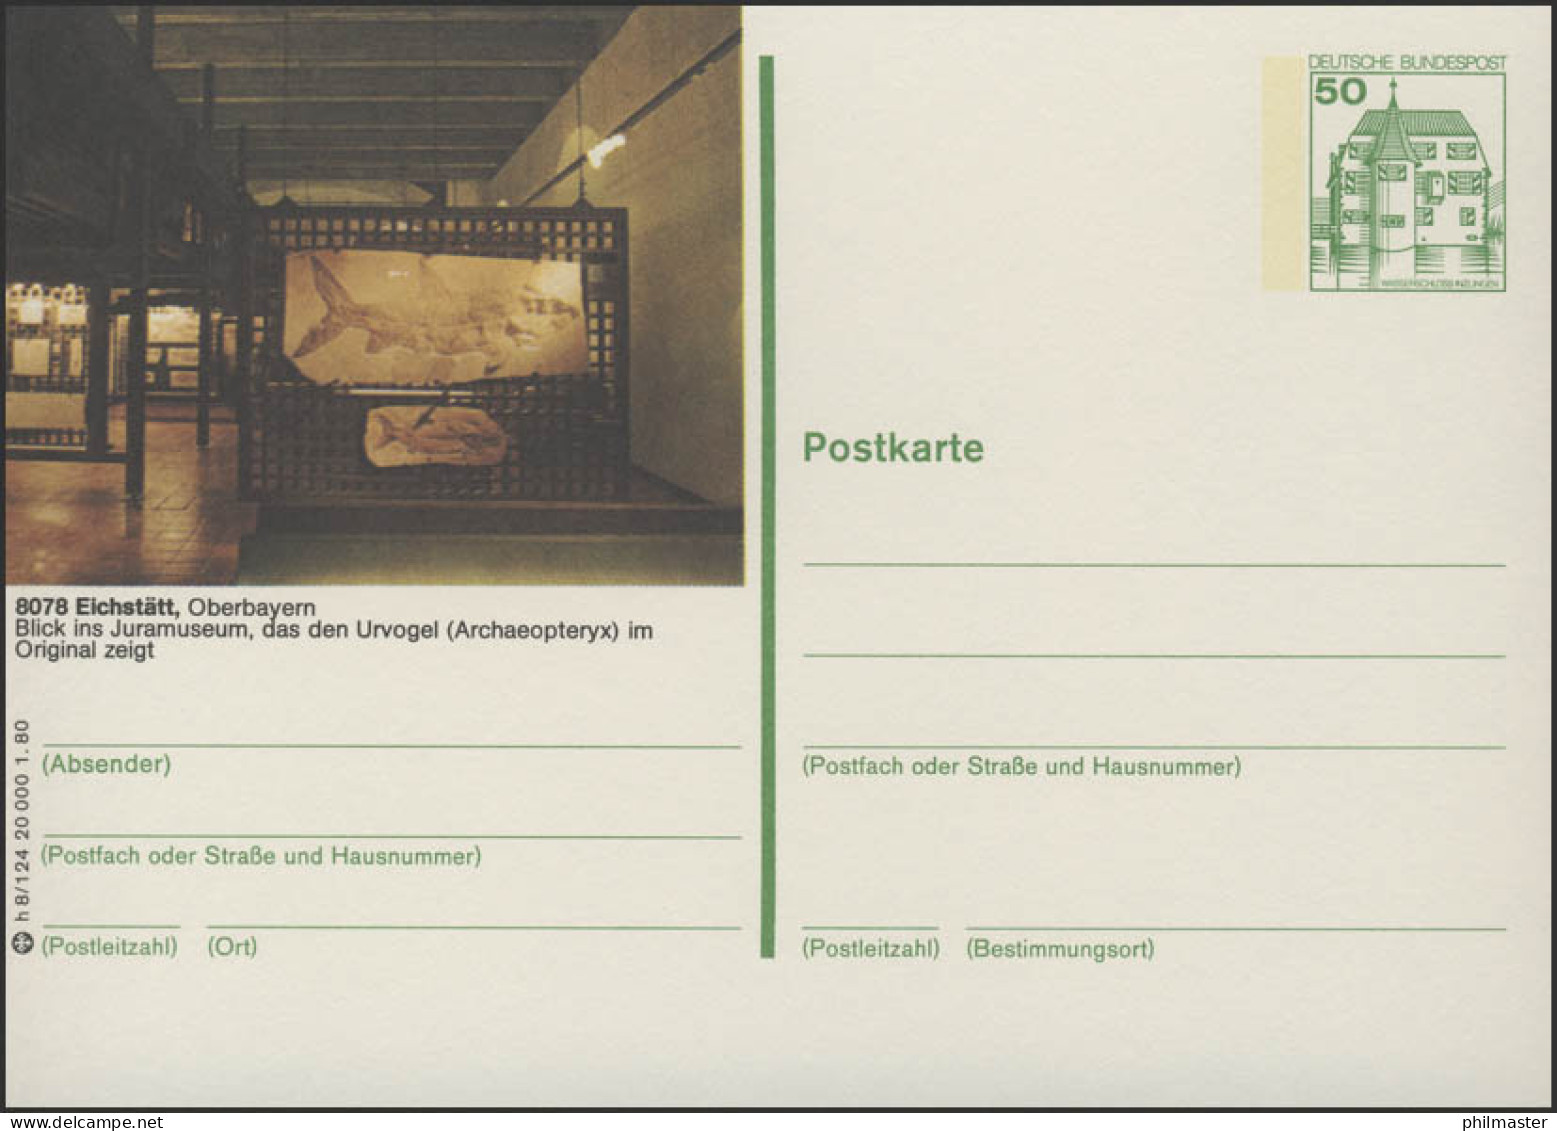 P130-h8/124 - 8078 Eichstädt, Jura-Museum ** - Geïllustreerde Postkaarten - Ongebruikt